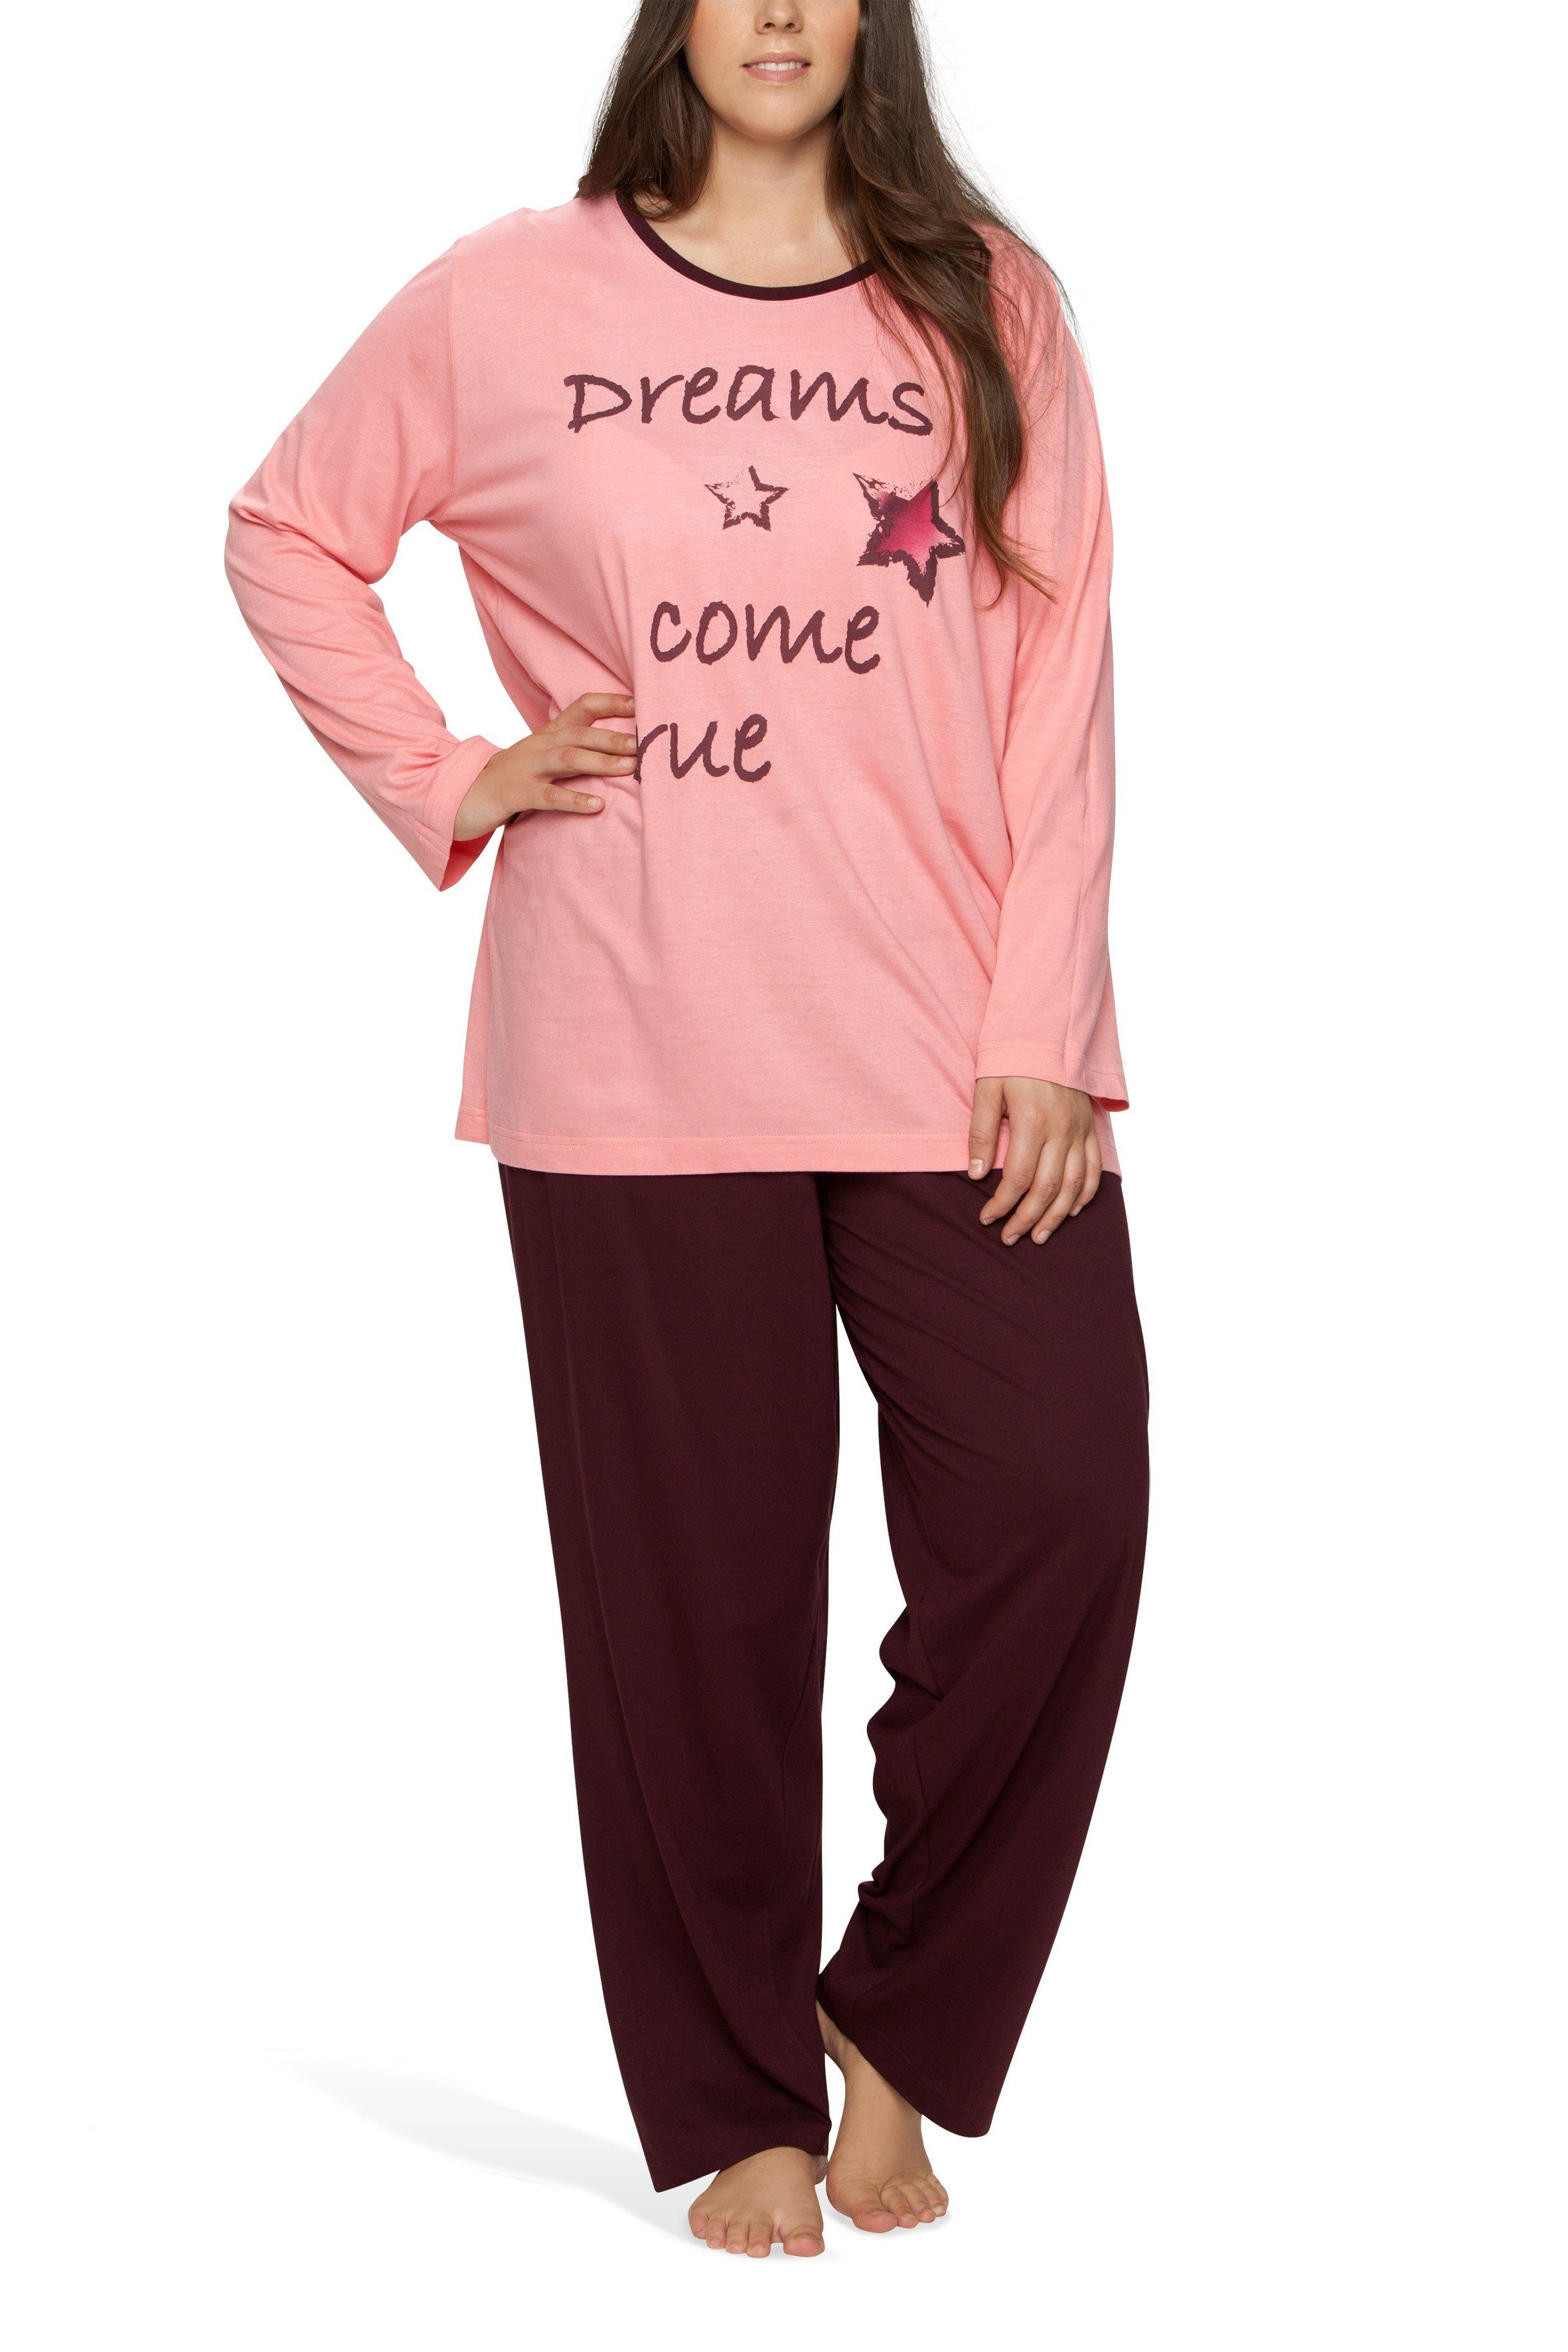 Moonline Pyjama Damen Schlafanzug Pyjama in großen Größen (Übergröße XL - 4XL) aus 100% Baumwolle rosa